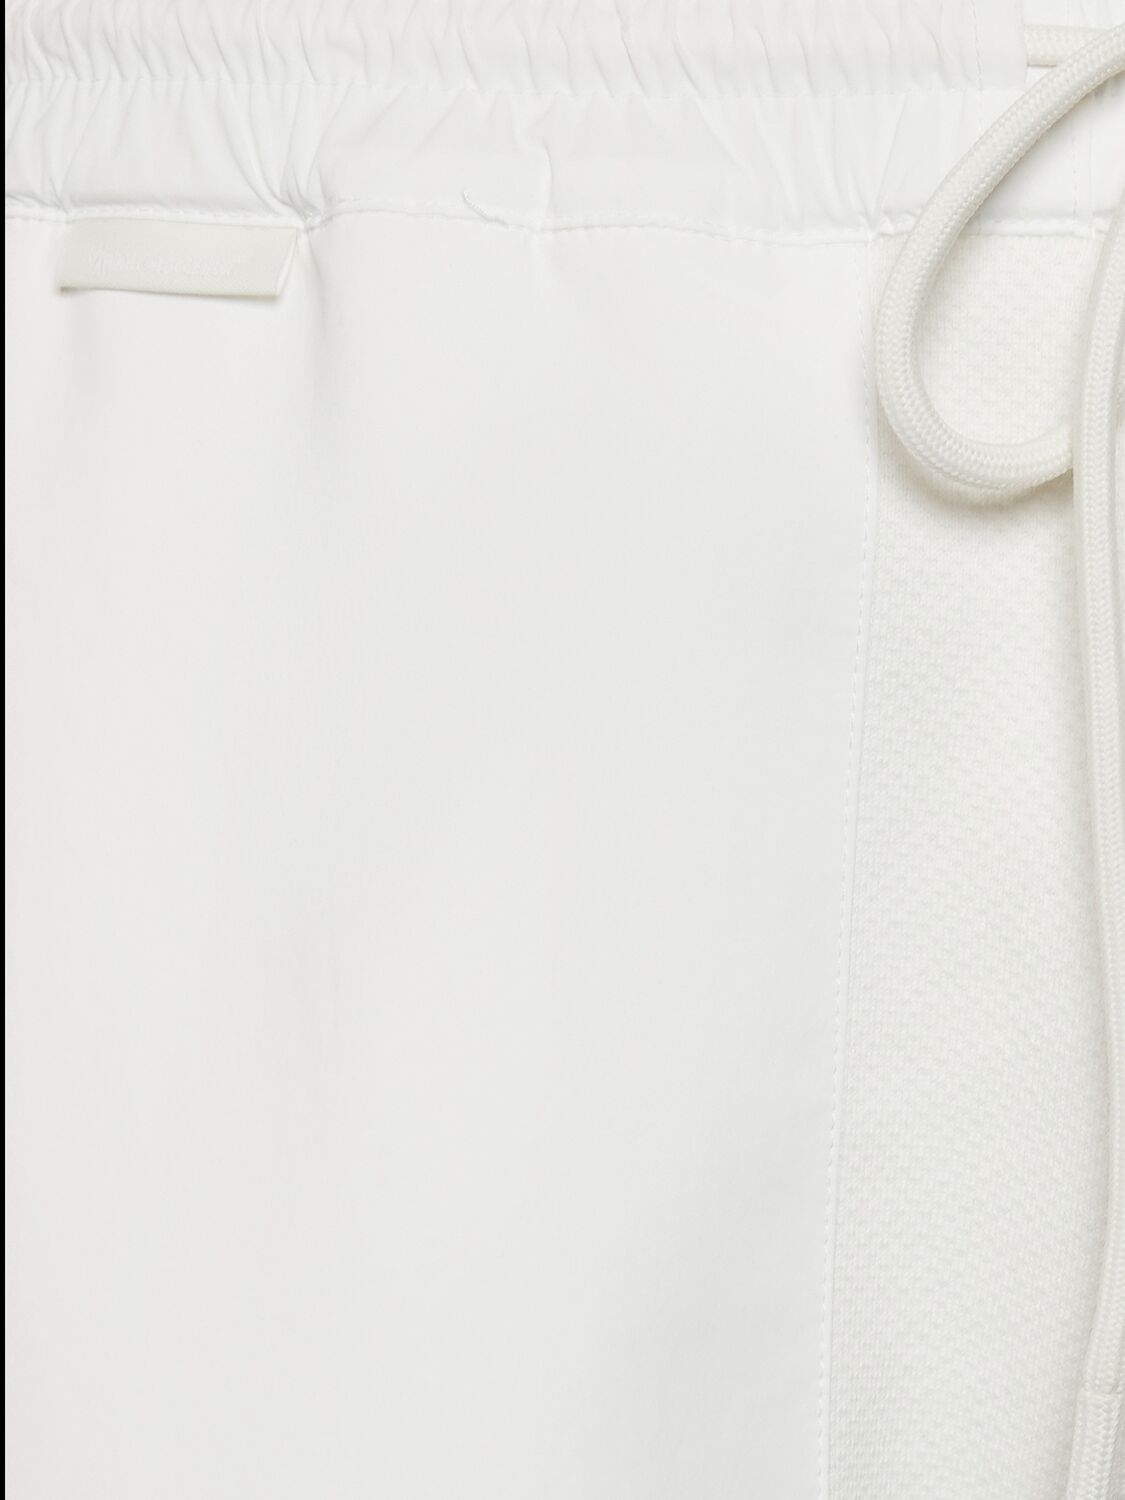 Shop Moncler Cny Cotton Jogging Sweatpants In White